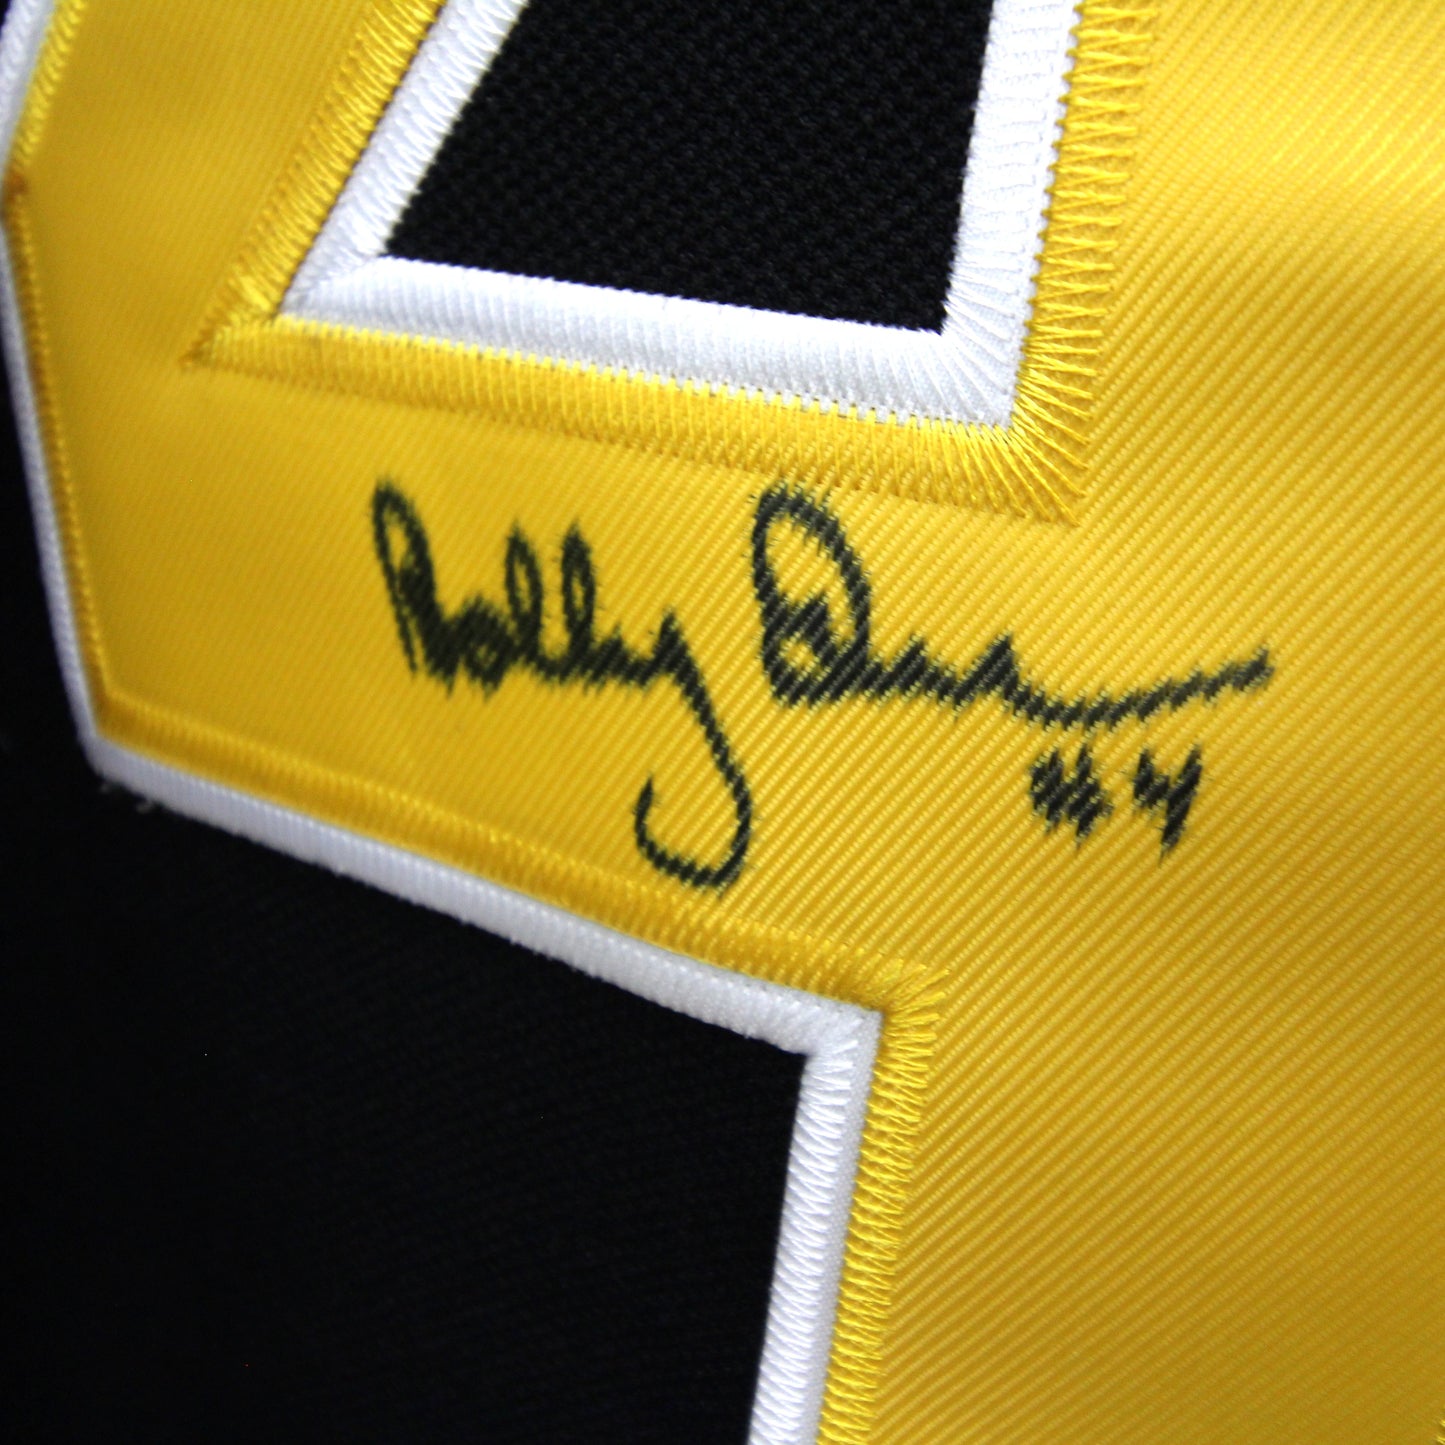 Bobby Orr - Bruins -  Autographed Jersey / Chandail autographié